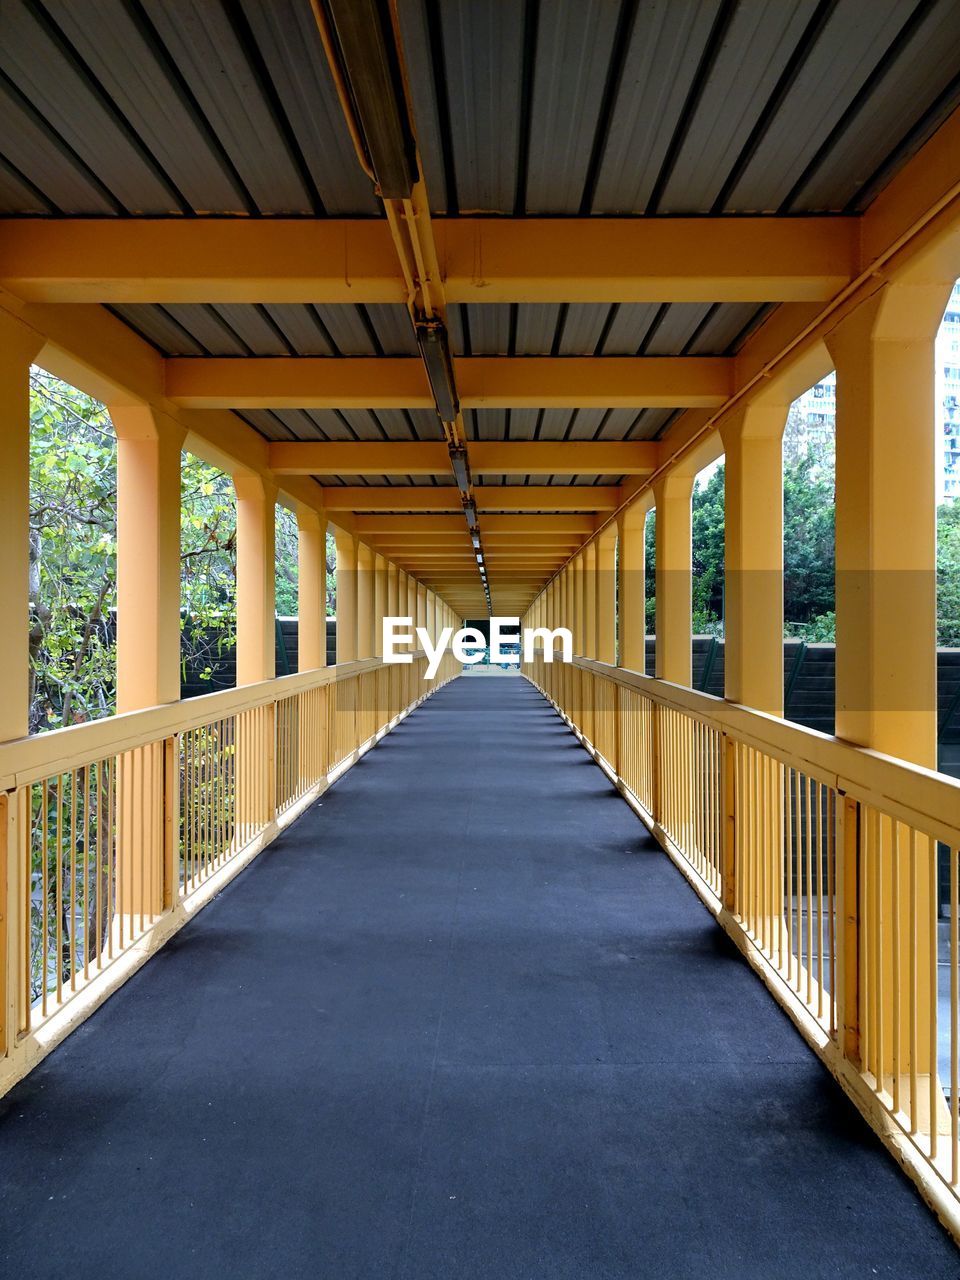 Elevated walkway in footbridge